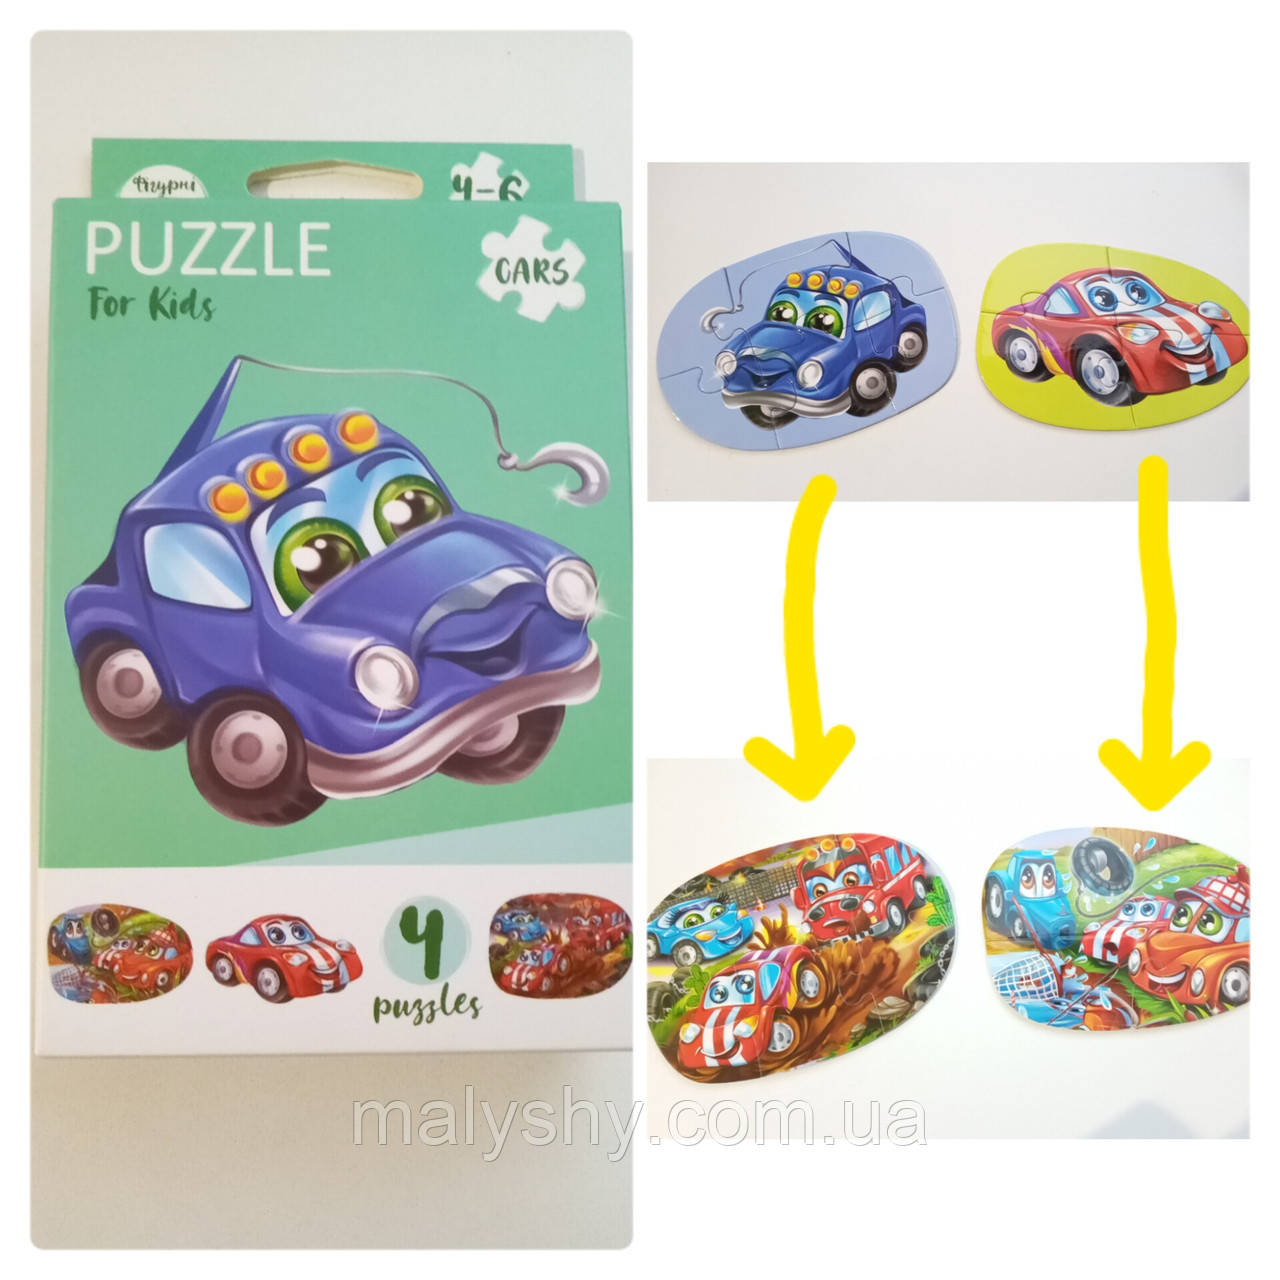 Развиваючі пазли для маленьких дітей "Puzzle For Kids" / Cars